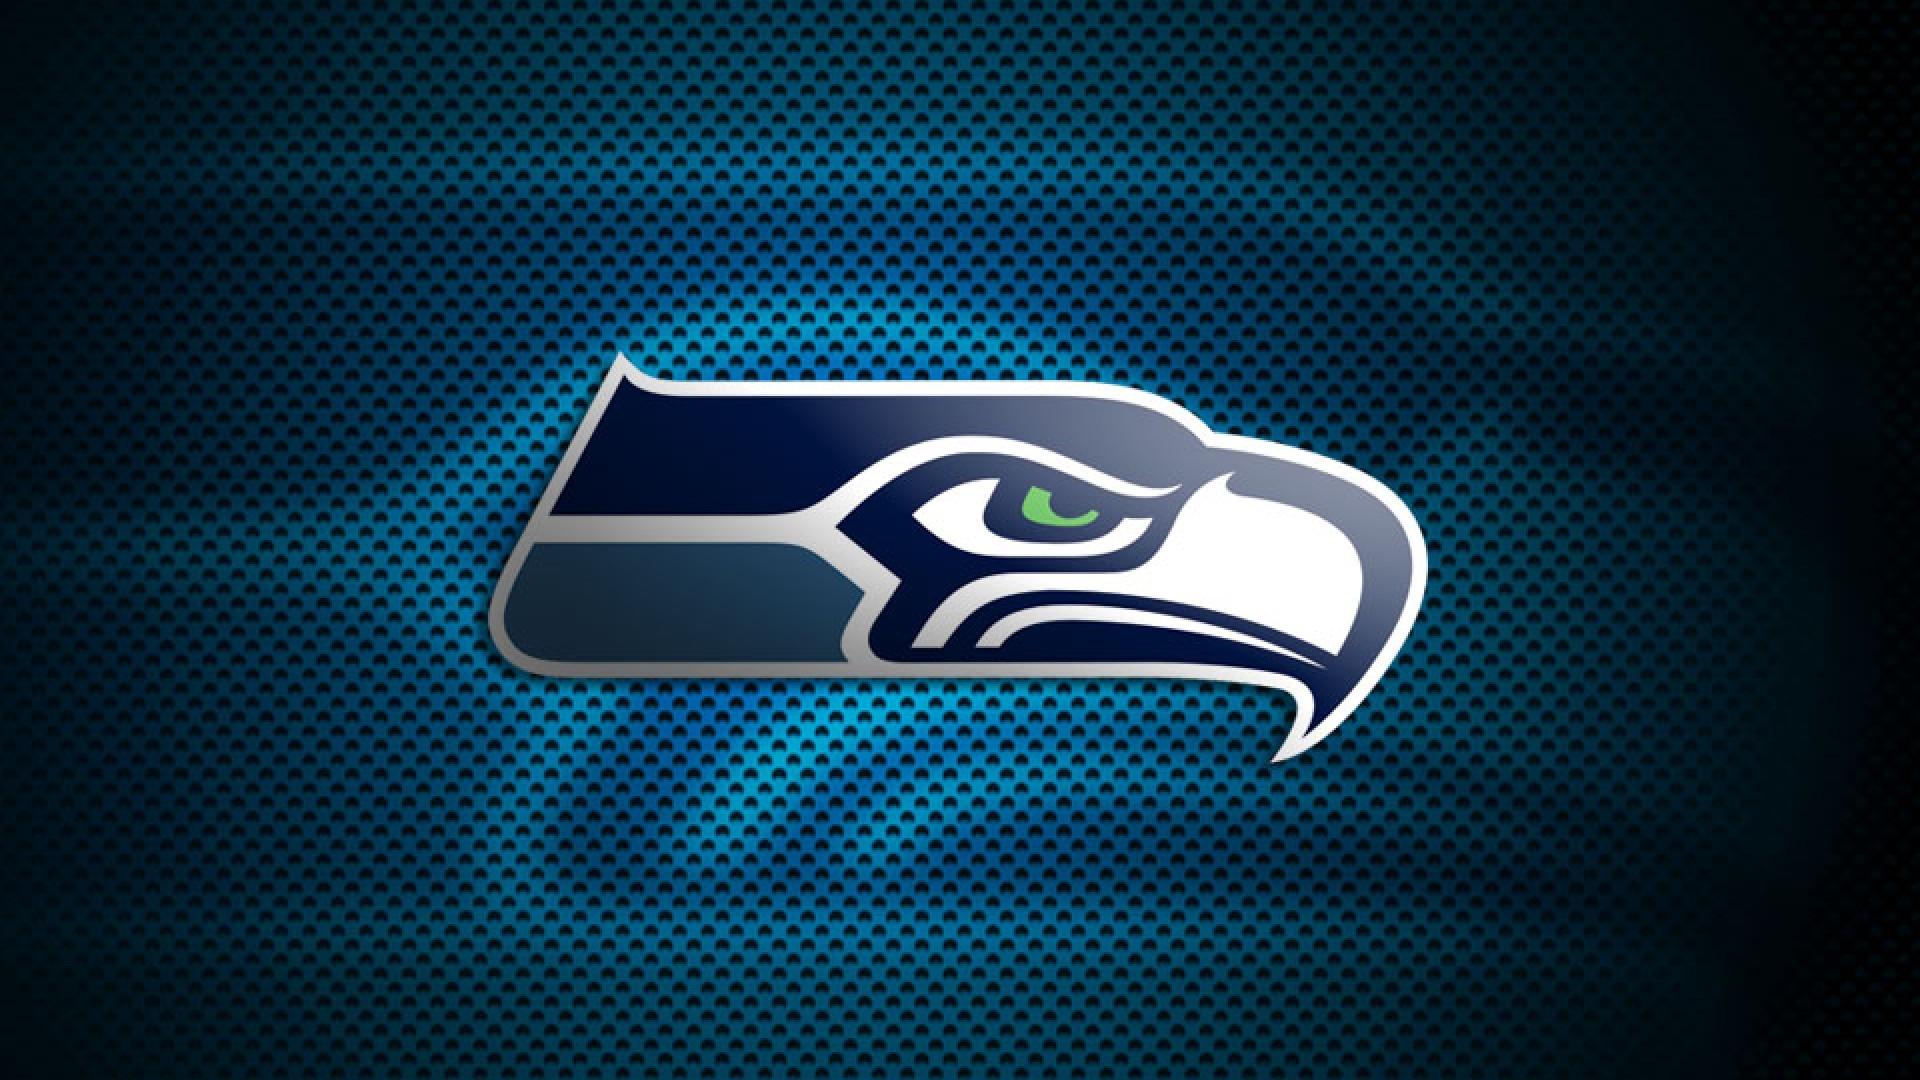 NFL Seahawks Logo - NFL Seahawks Seattle Logo 1920×1080 - High Definition Wallpaper ...